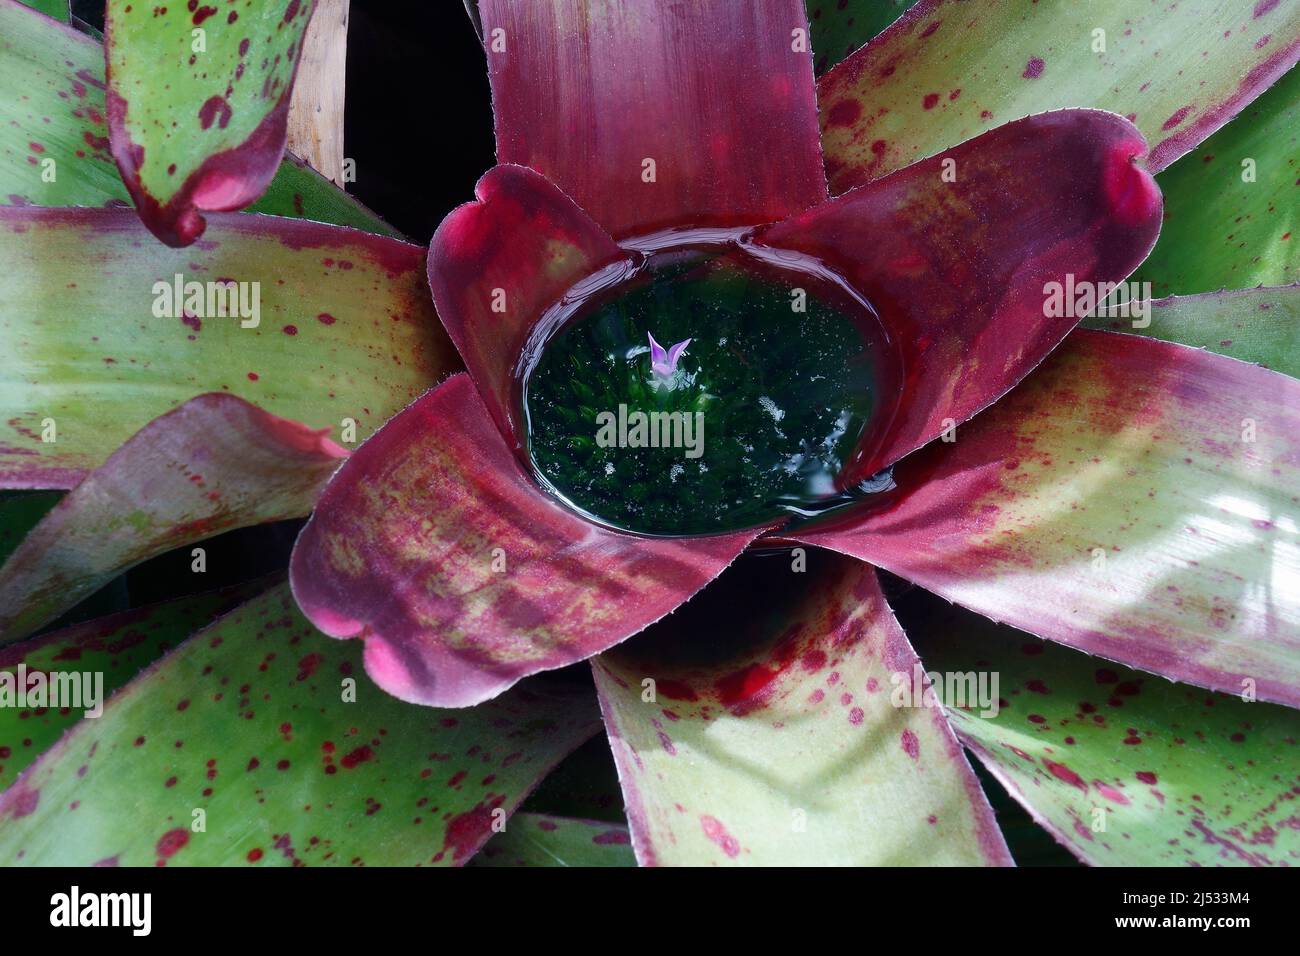 Blushing bromeliad (Neoregelia carolinae) Stock Photo